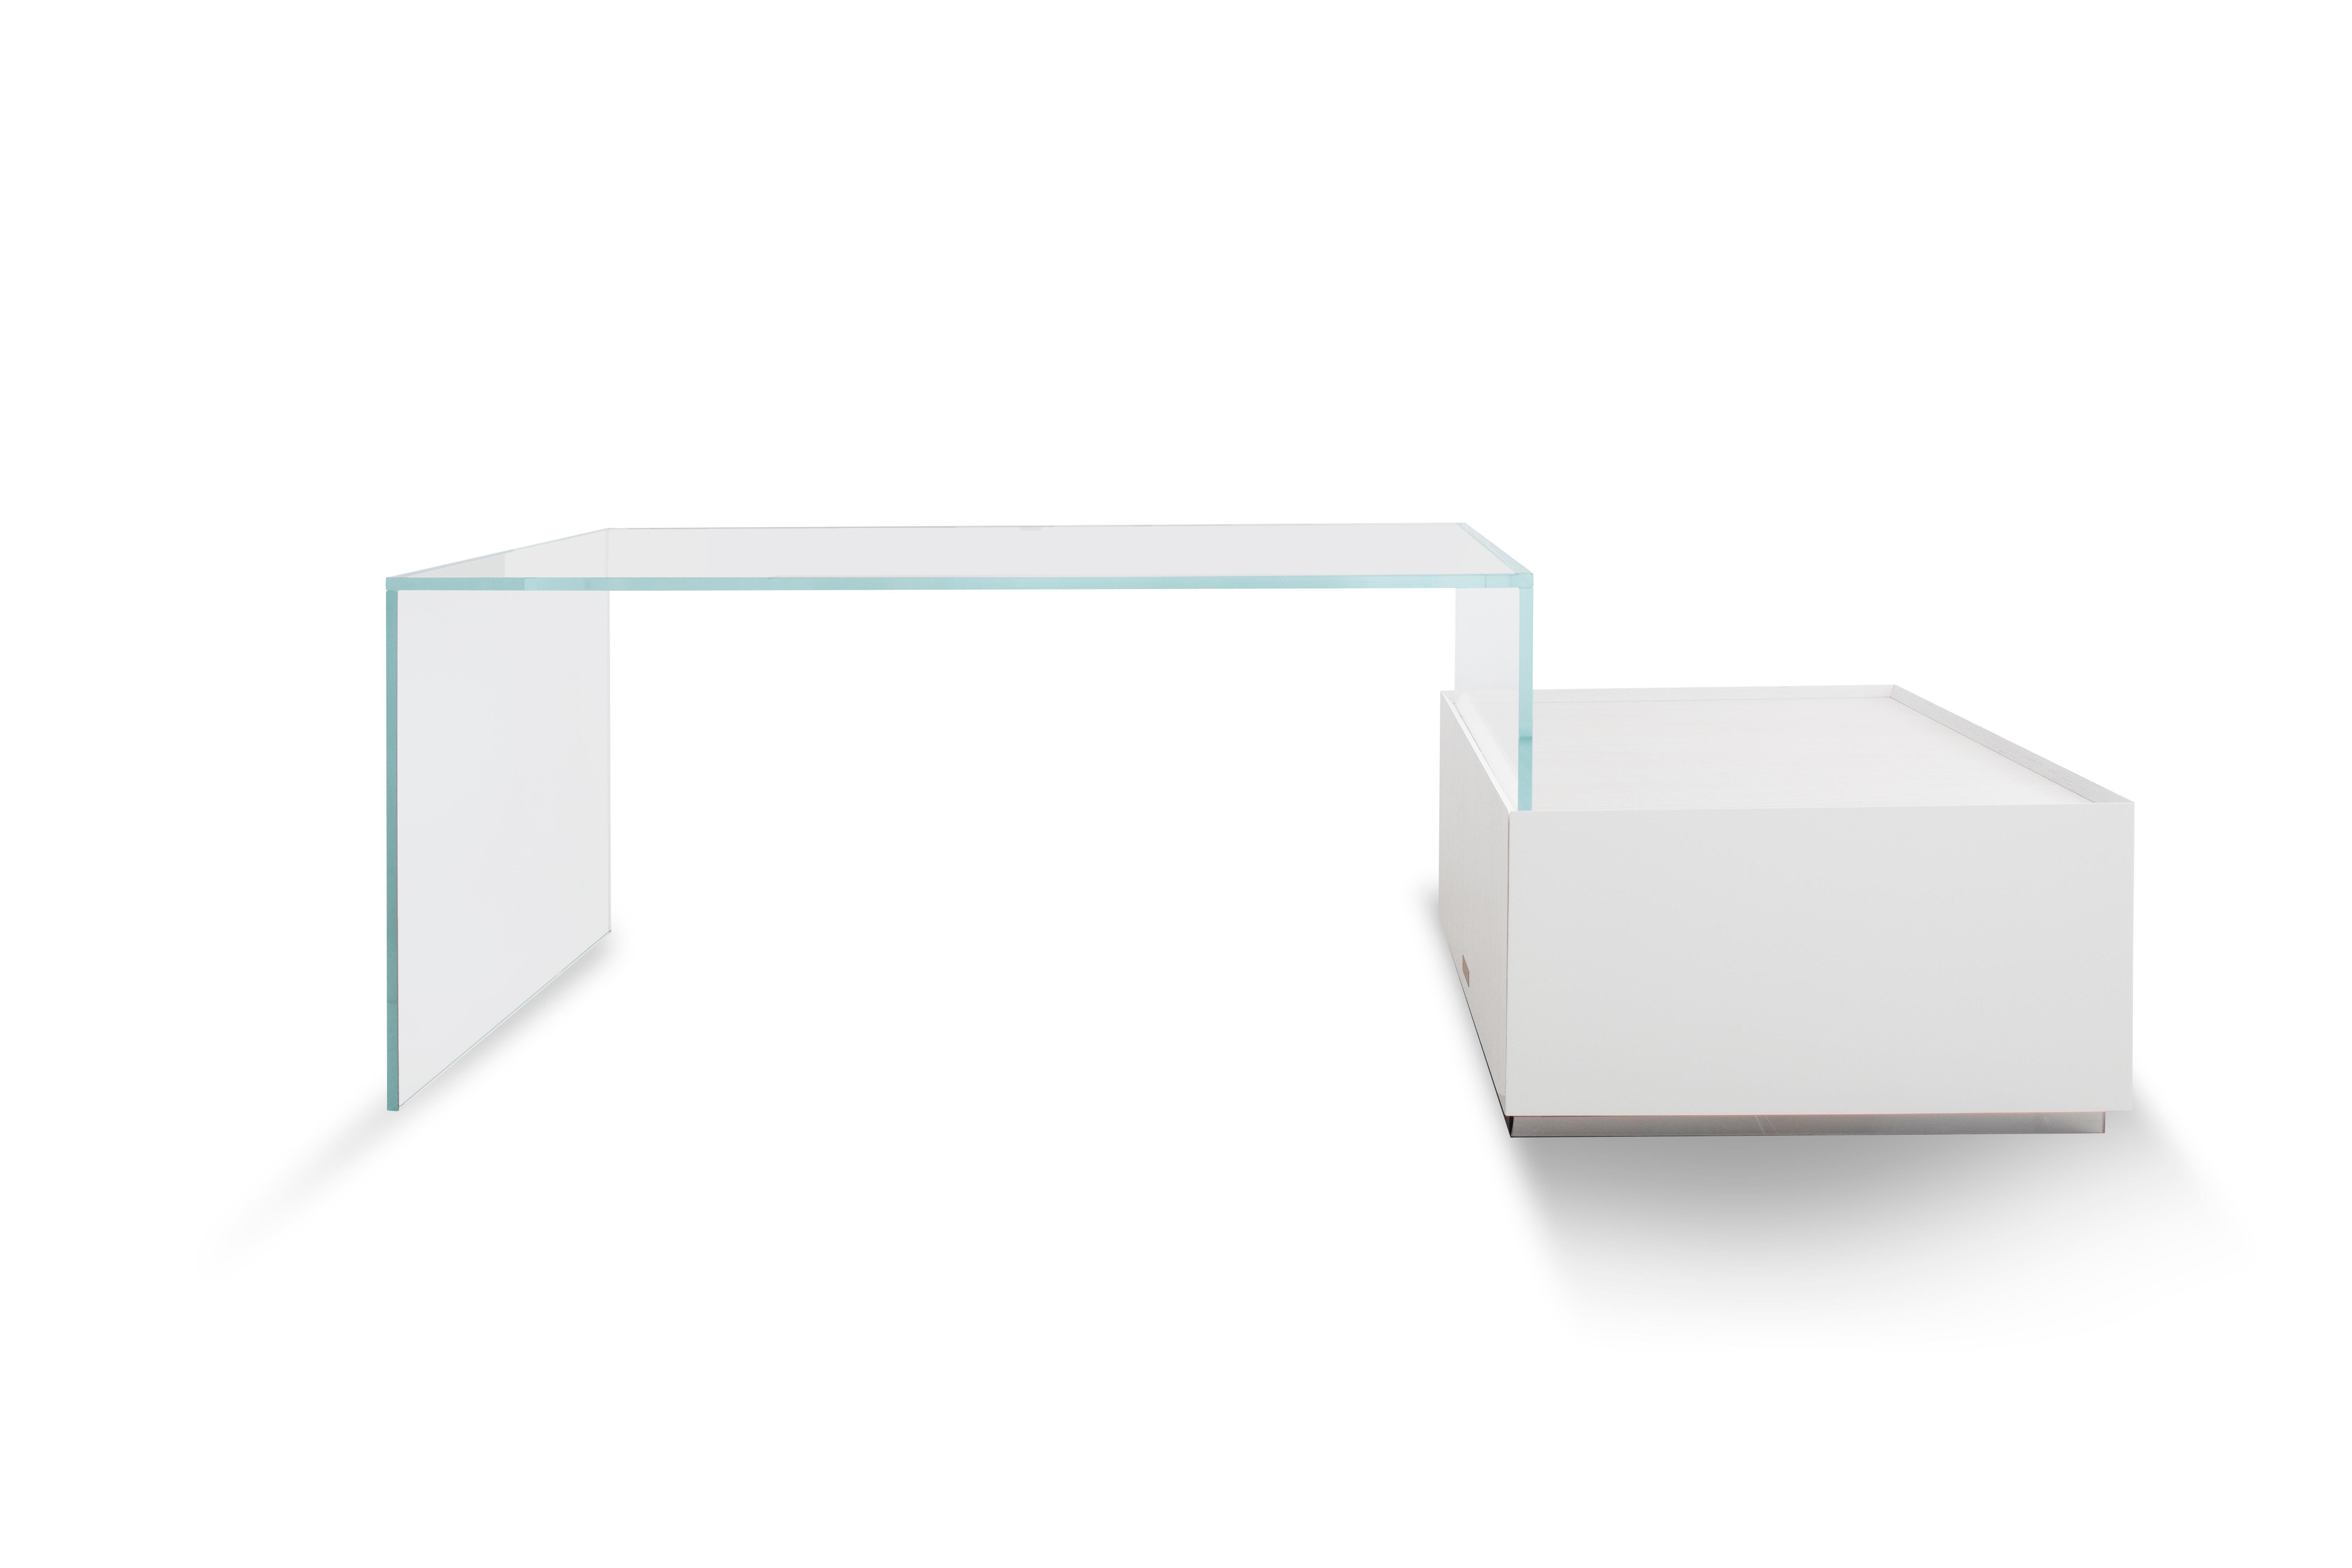 Sky Bridge est un bureau en verre avec une unité de rangement multifonctionnelle pure en chêne blanc pour le nomade numérique contemporain - propre, léger et fonctionnel.
 
Tel qu'illustré, bois : Chêne blanc laiteux verre : Verre